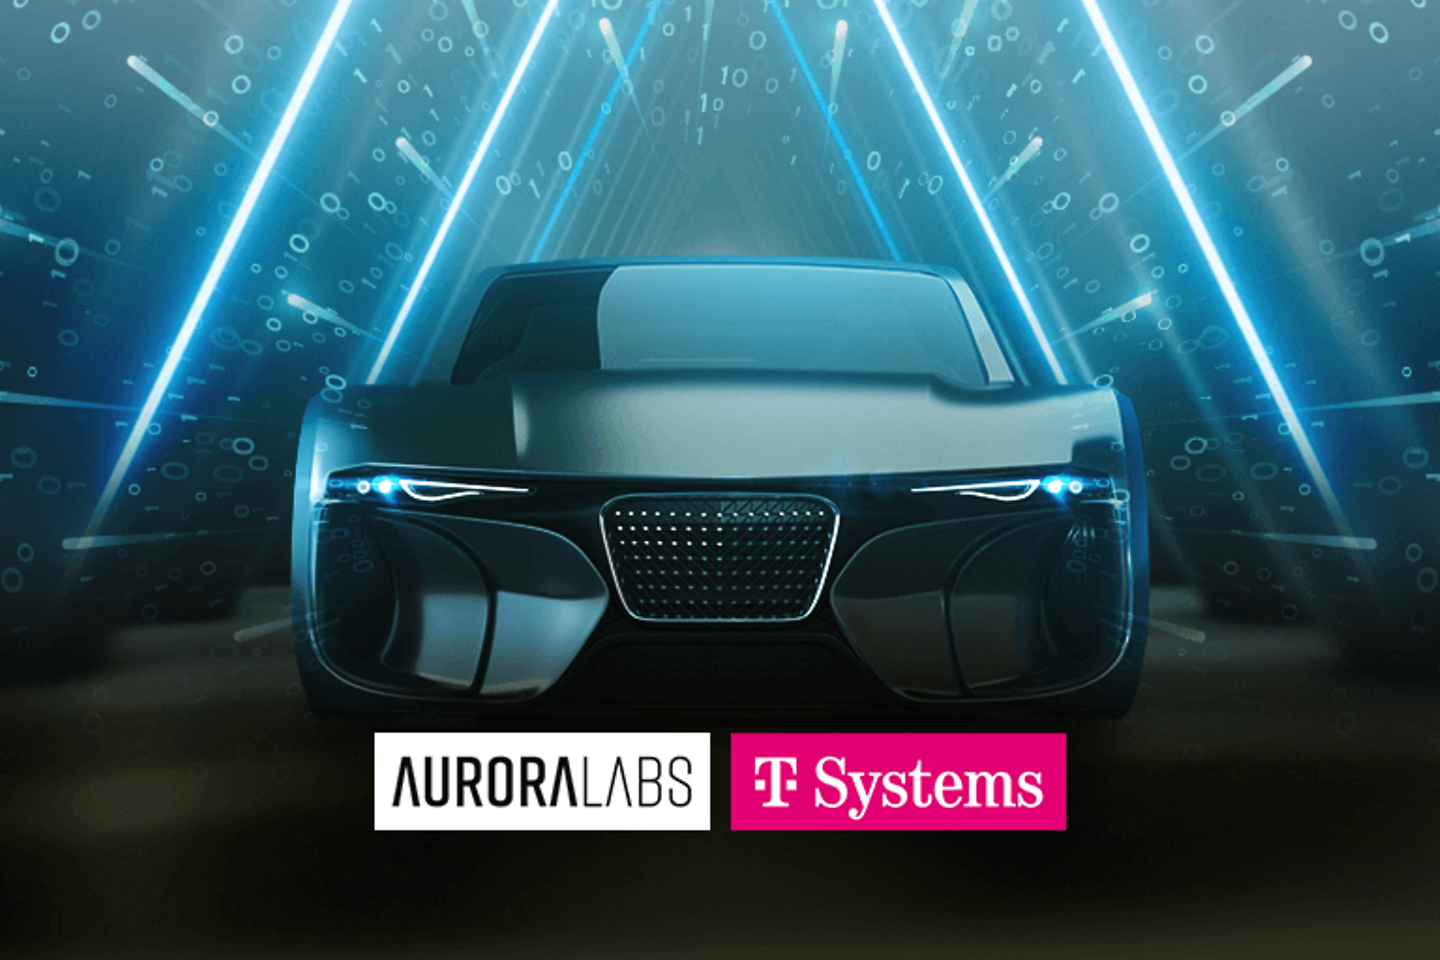 Vehículo definido por software usando la actualización de software OTA de T-Systems y Aurora Labs